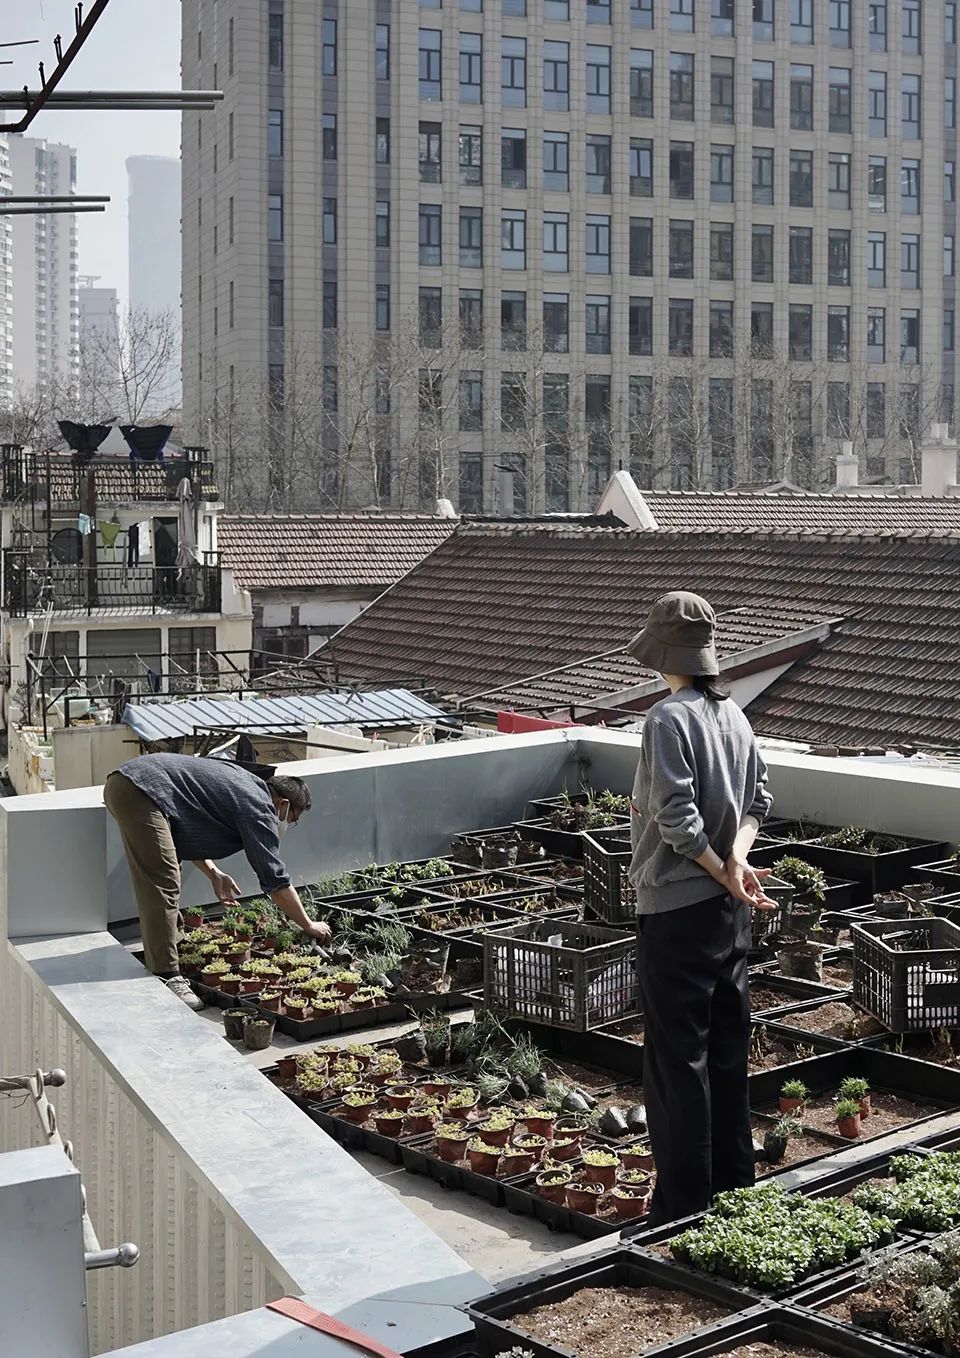 屋頂與「城市荒野」合作進行種植，也遵循門市的整體概念：促進社區的生物多樣性，並與相鄰建築的公共屋頂露台相互連接，綠屋頂選擇了上海本土植栽，適應當地的季節性變化